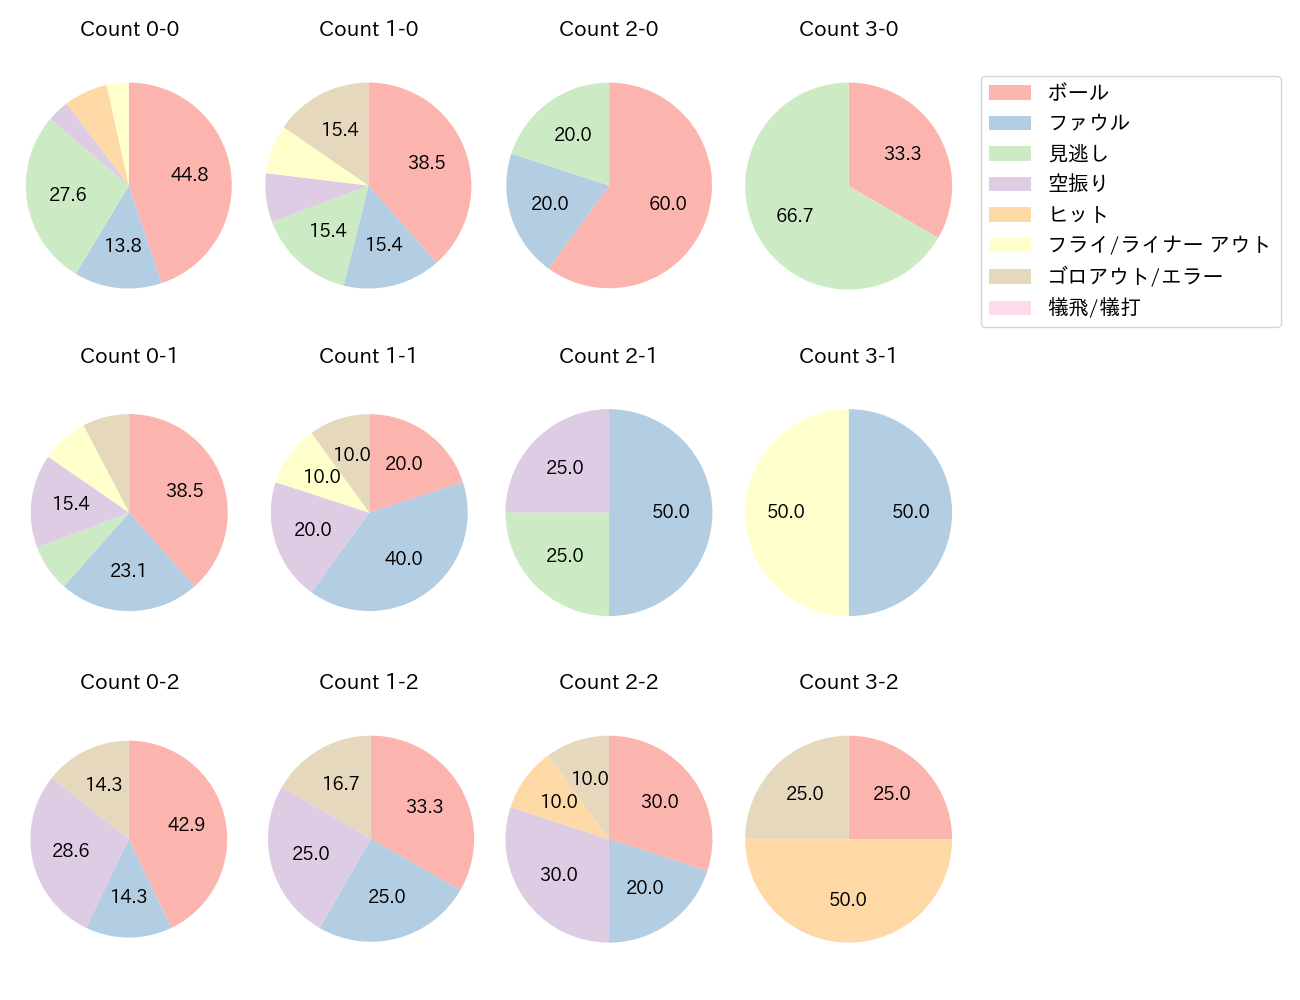 後藤 駿太の球数分布(2022年4月)